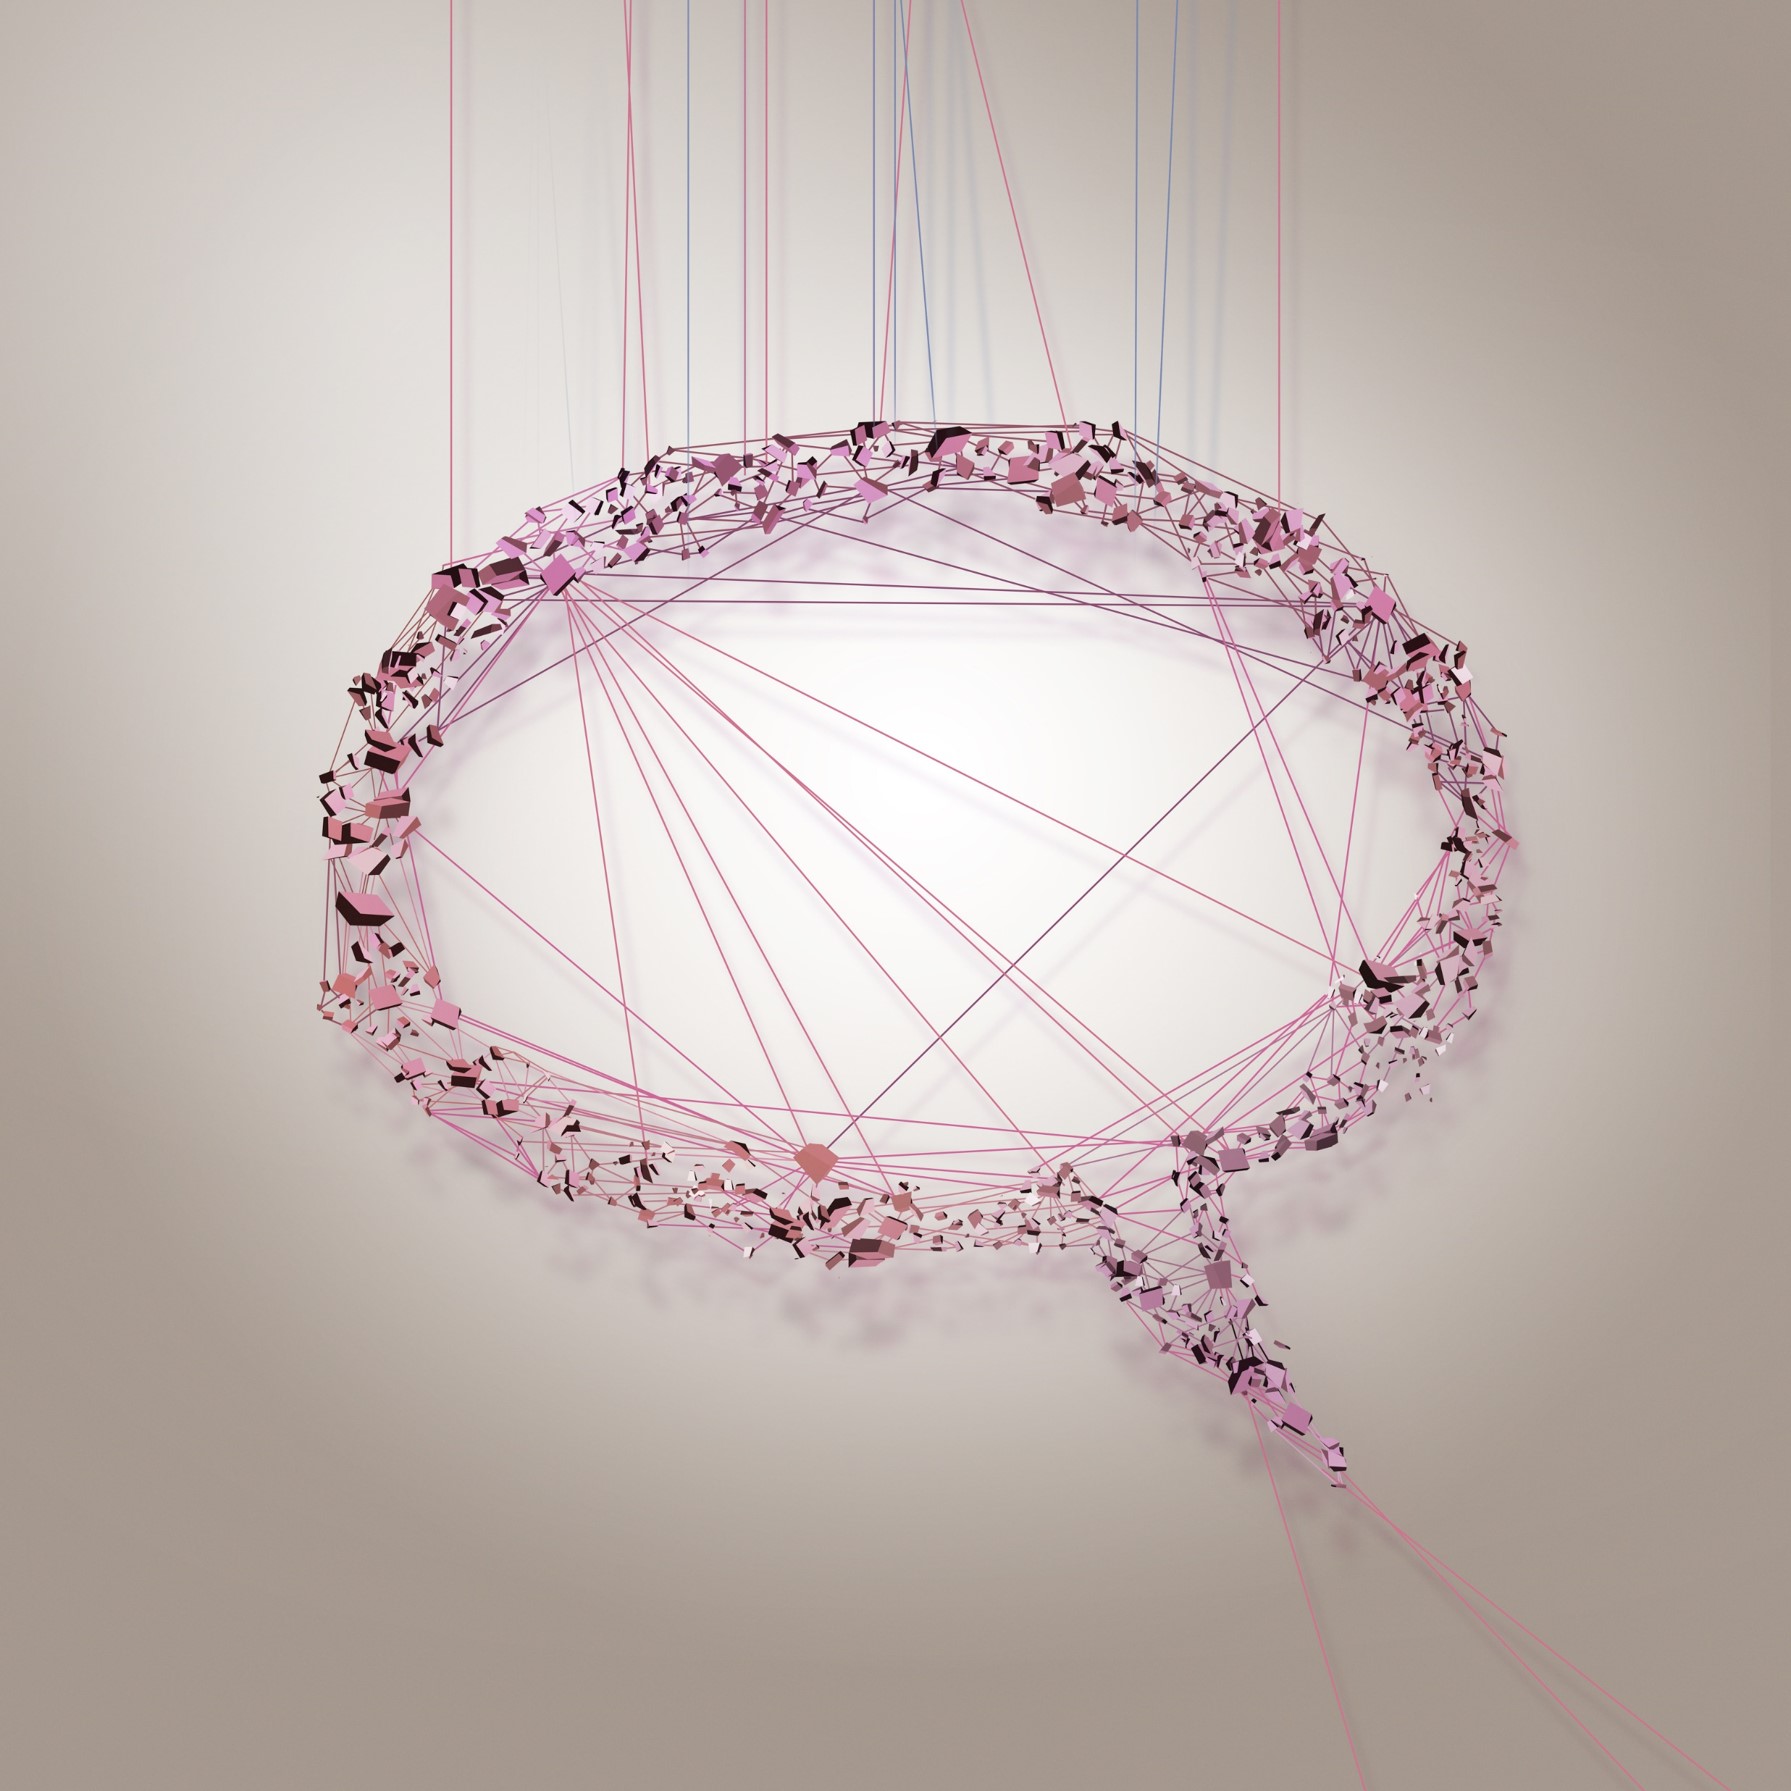 En pratbubbla i form av linjer i rosa färg på grå bakgrund